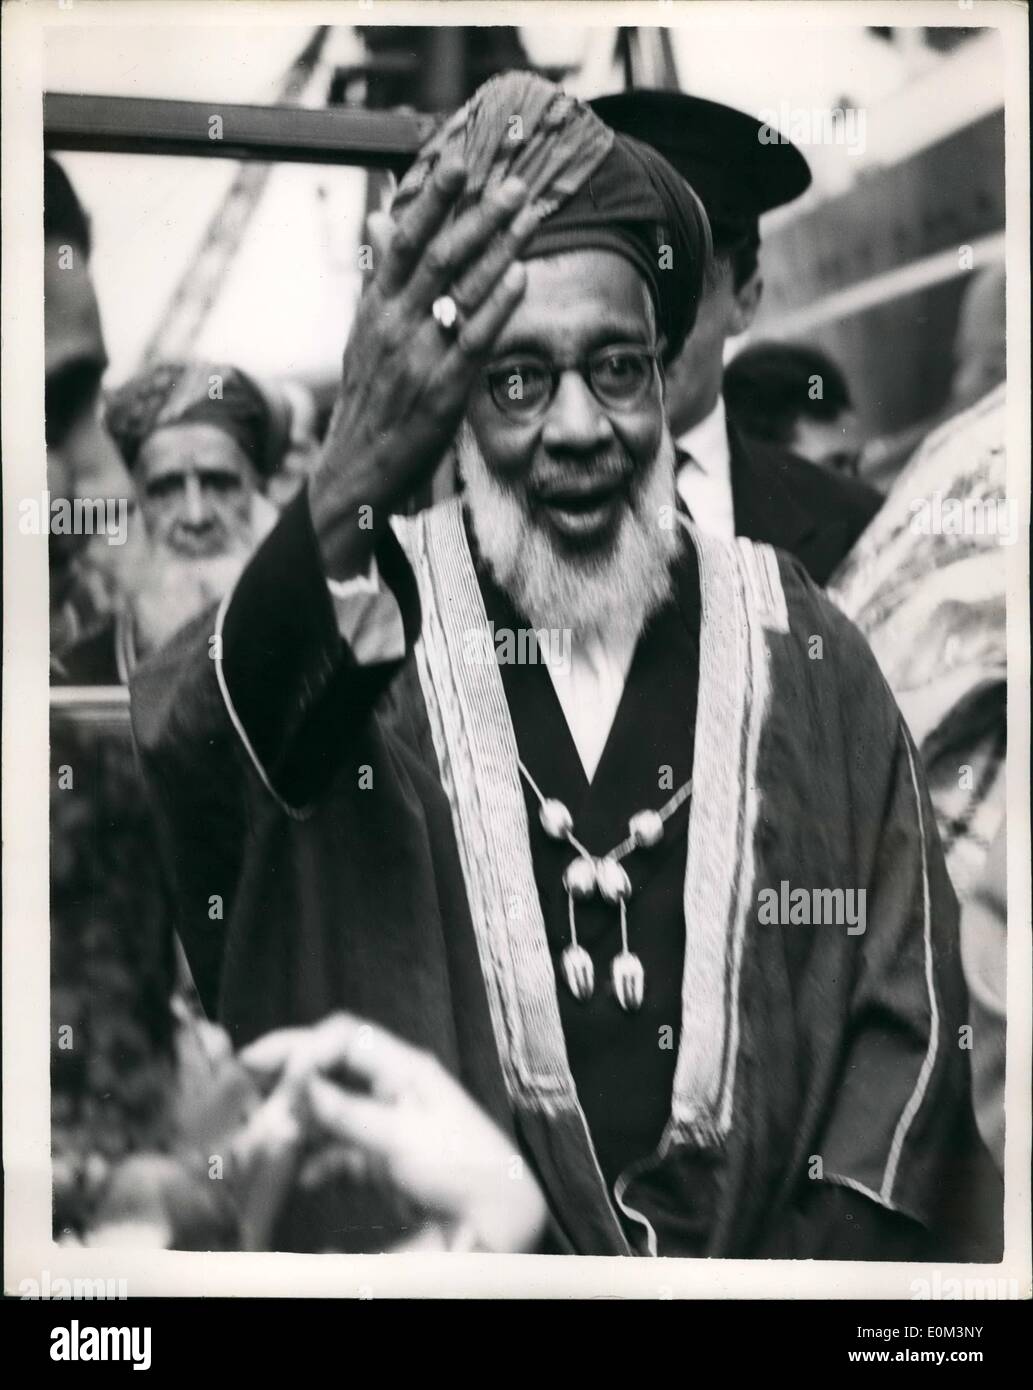 may-05-1953-sultan-of-zanzibar-arrives-for-coronation-the-sultan-of-E0M3NY.jpg